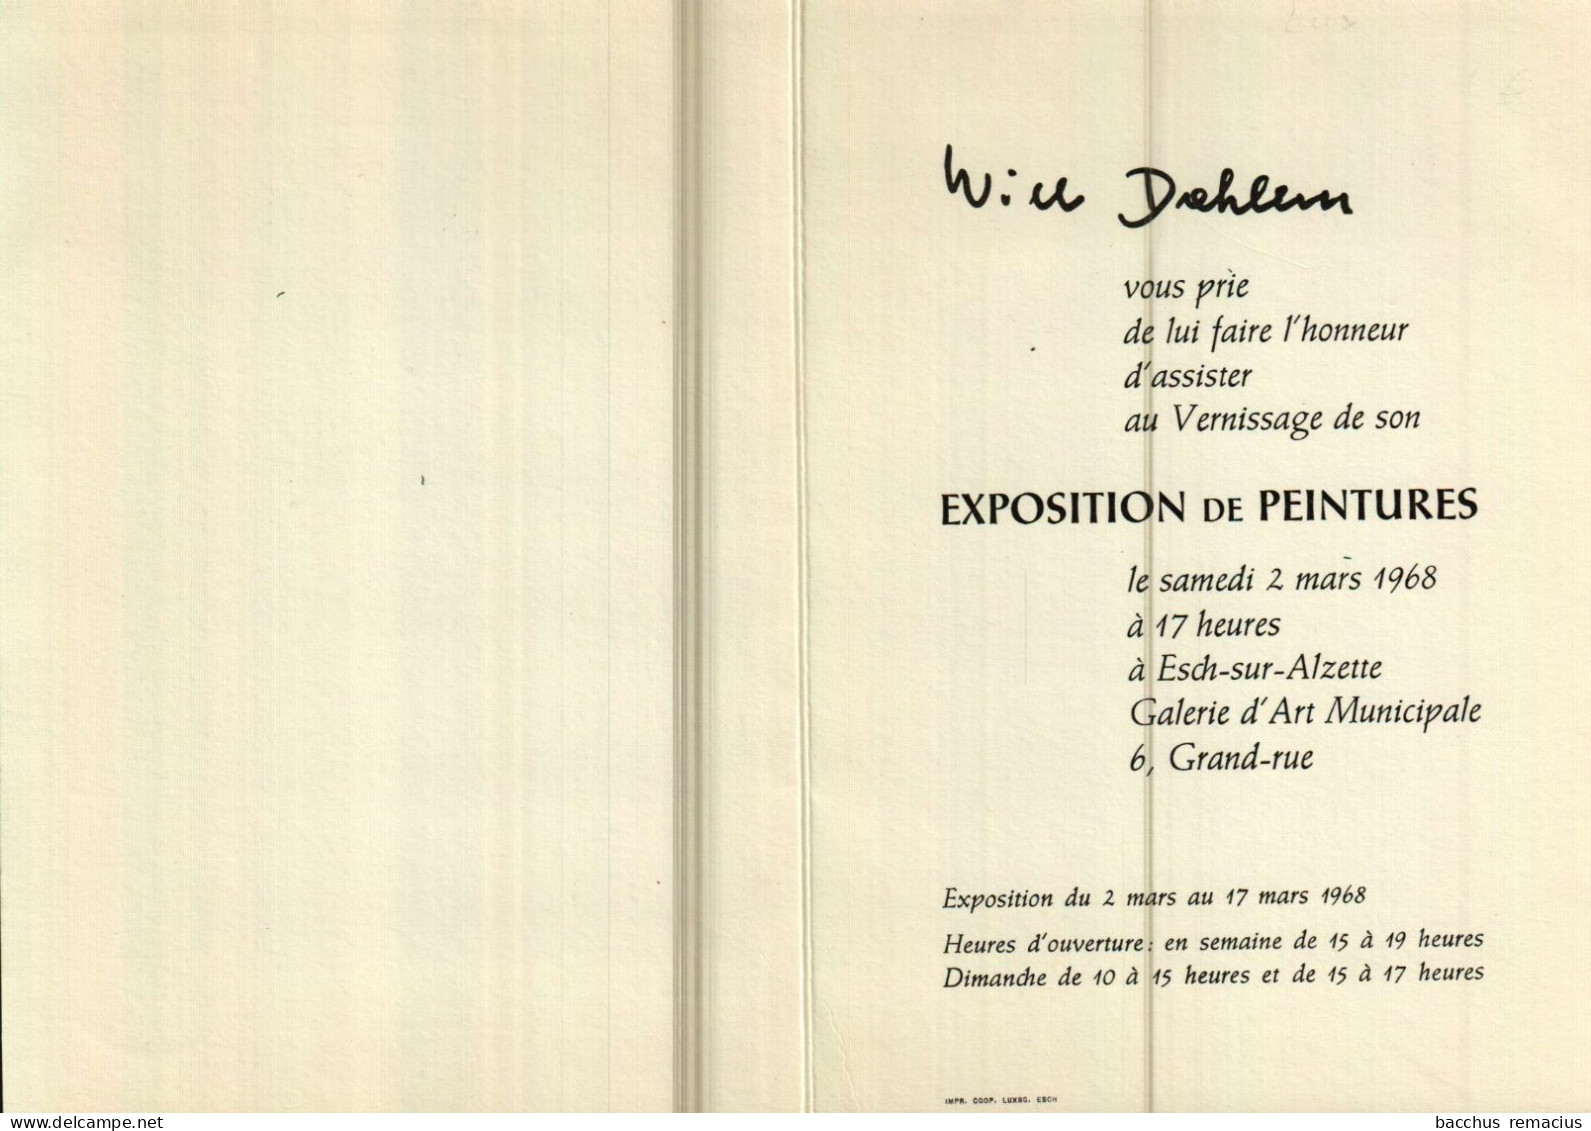 WILTZ Will Dahlem, Artiste-Peintre (Signature Originale)Invitation Au Vernissage De Son Exposition De Peintures 2.3.1968 - Wiltz